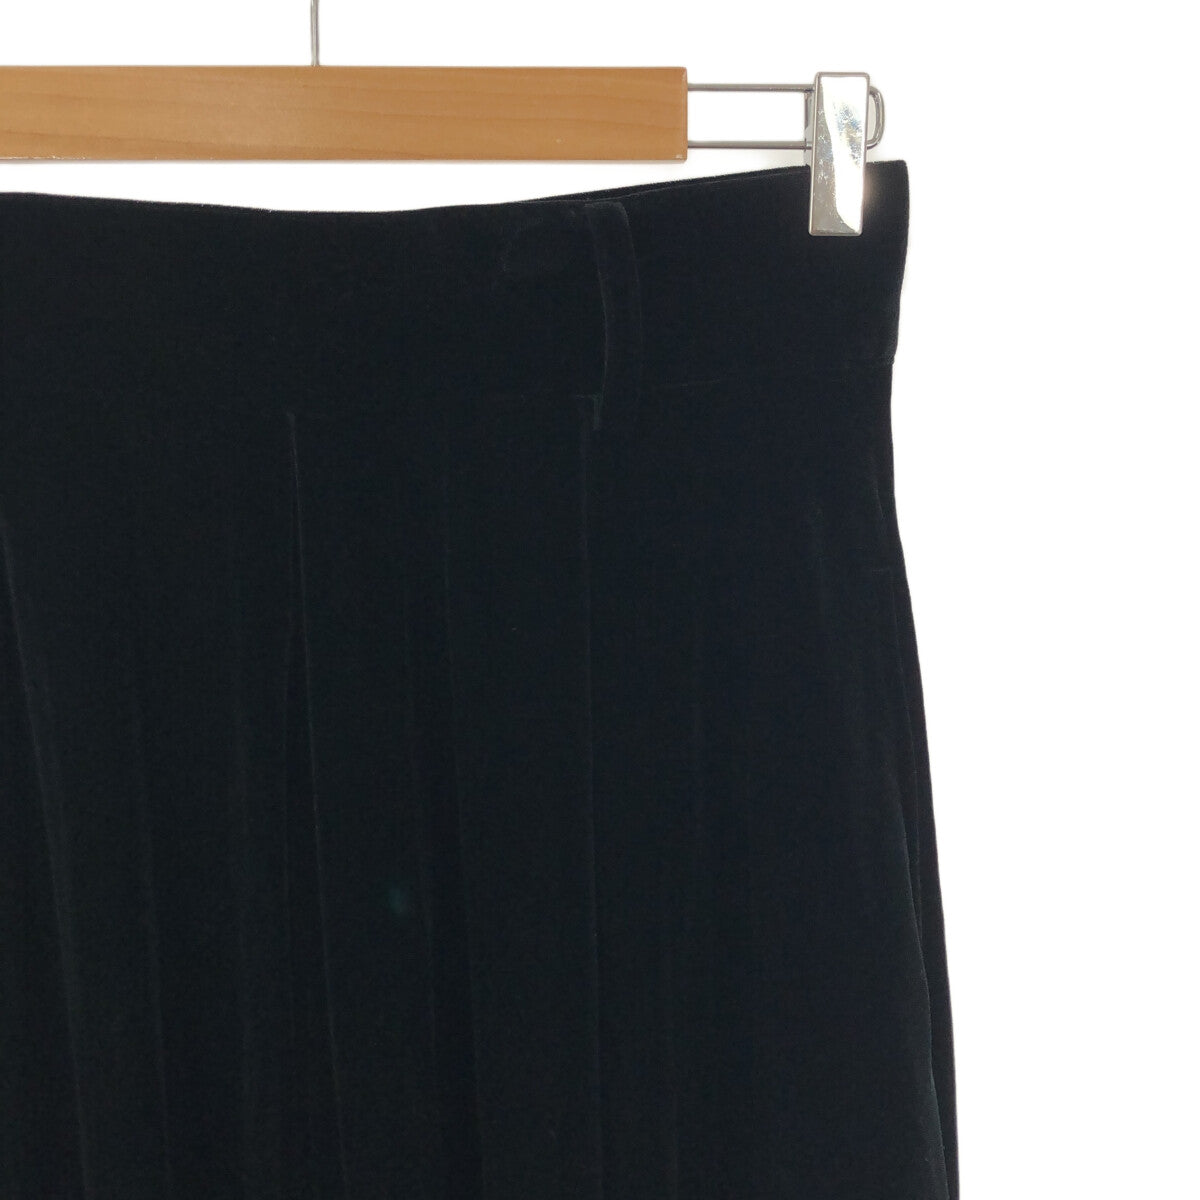 foufou / フーフー | THE DRESS #25 velour flare skirt ベロアフレアスカート | 1 |